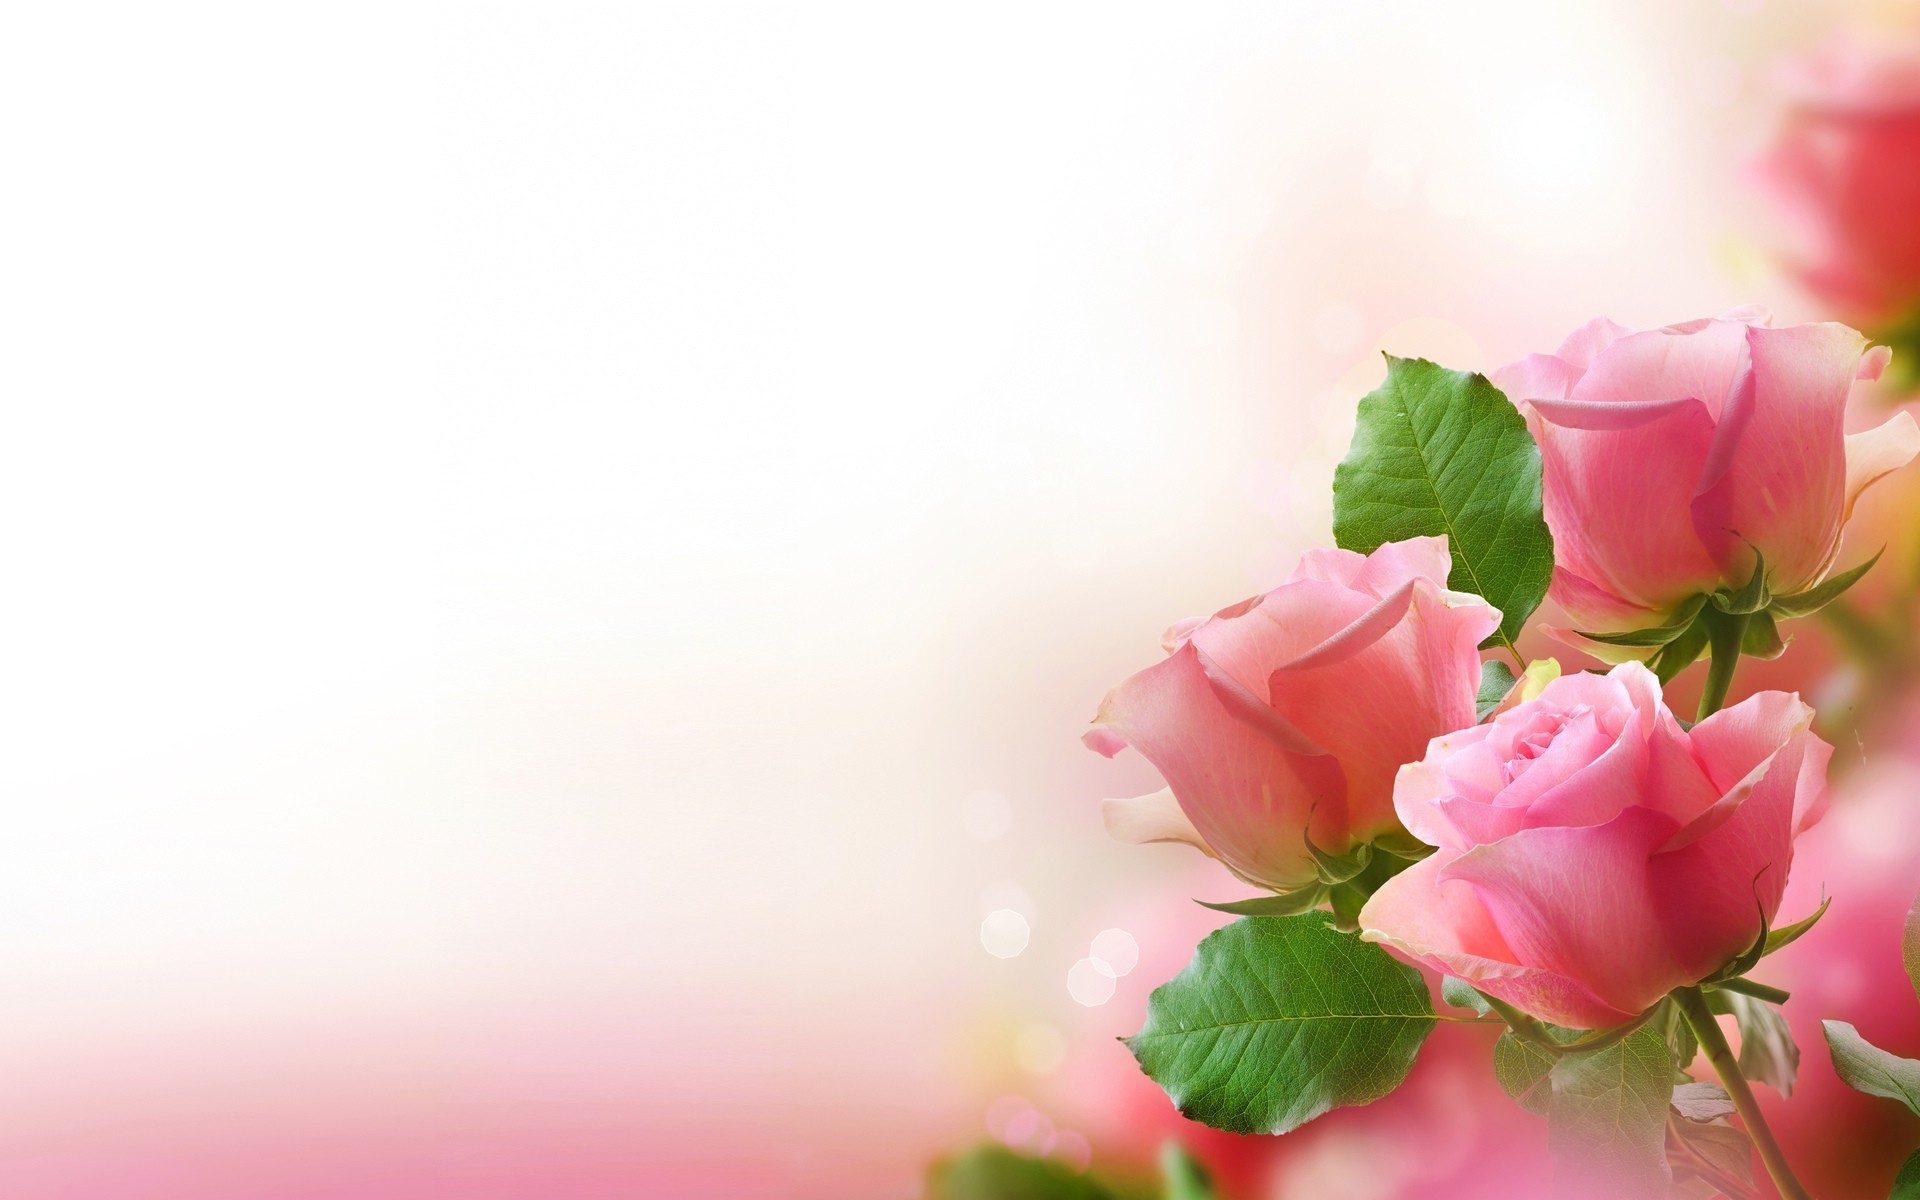 розы цветок природа лист лето лепесток яркий любовь цветочные флора романтика нежный сад блюминг